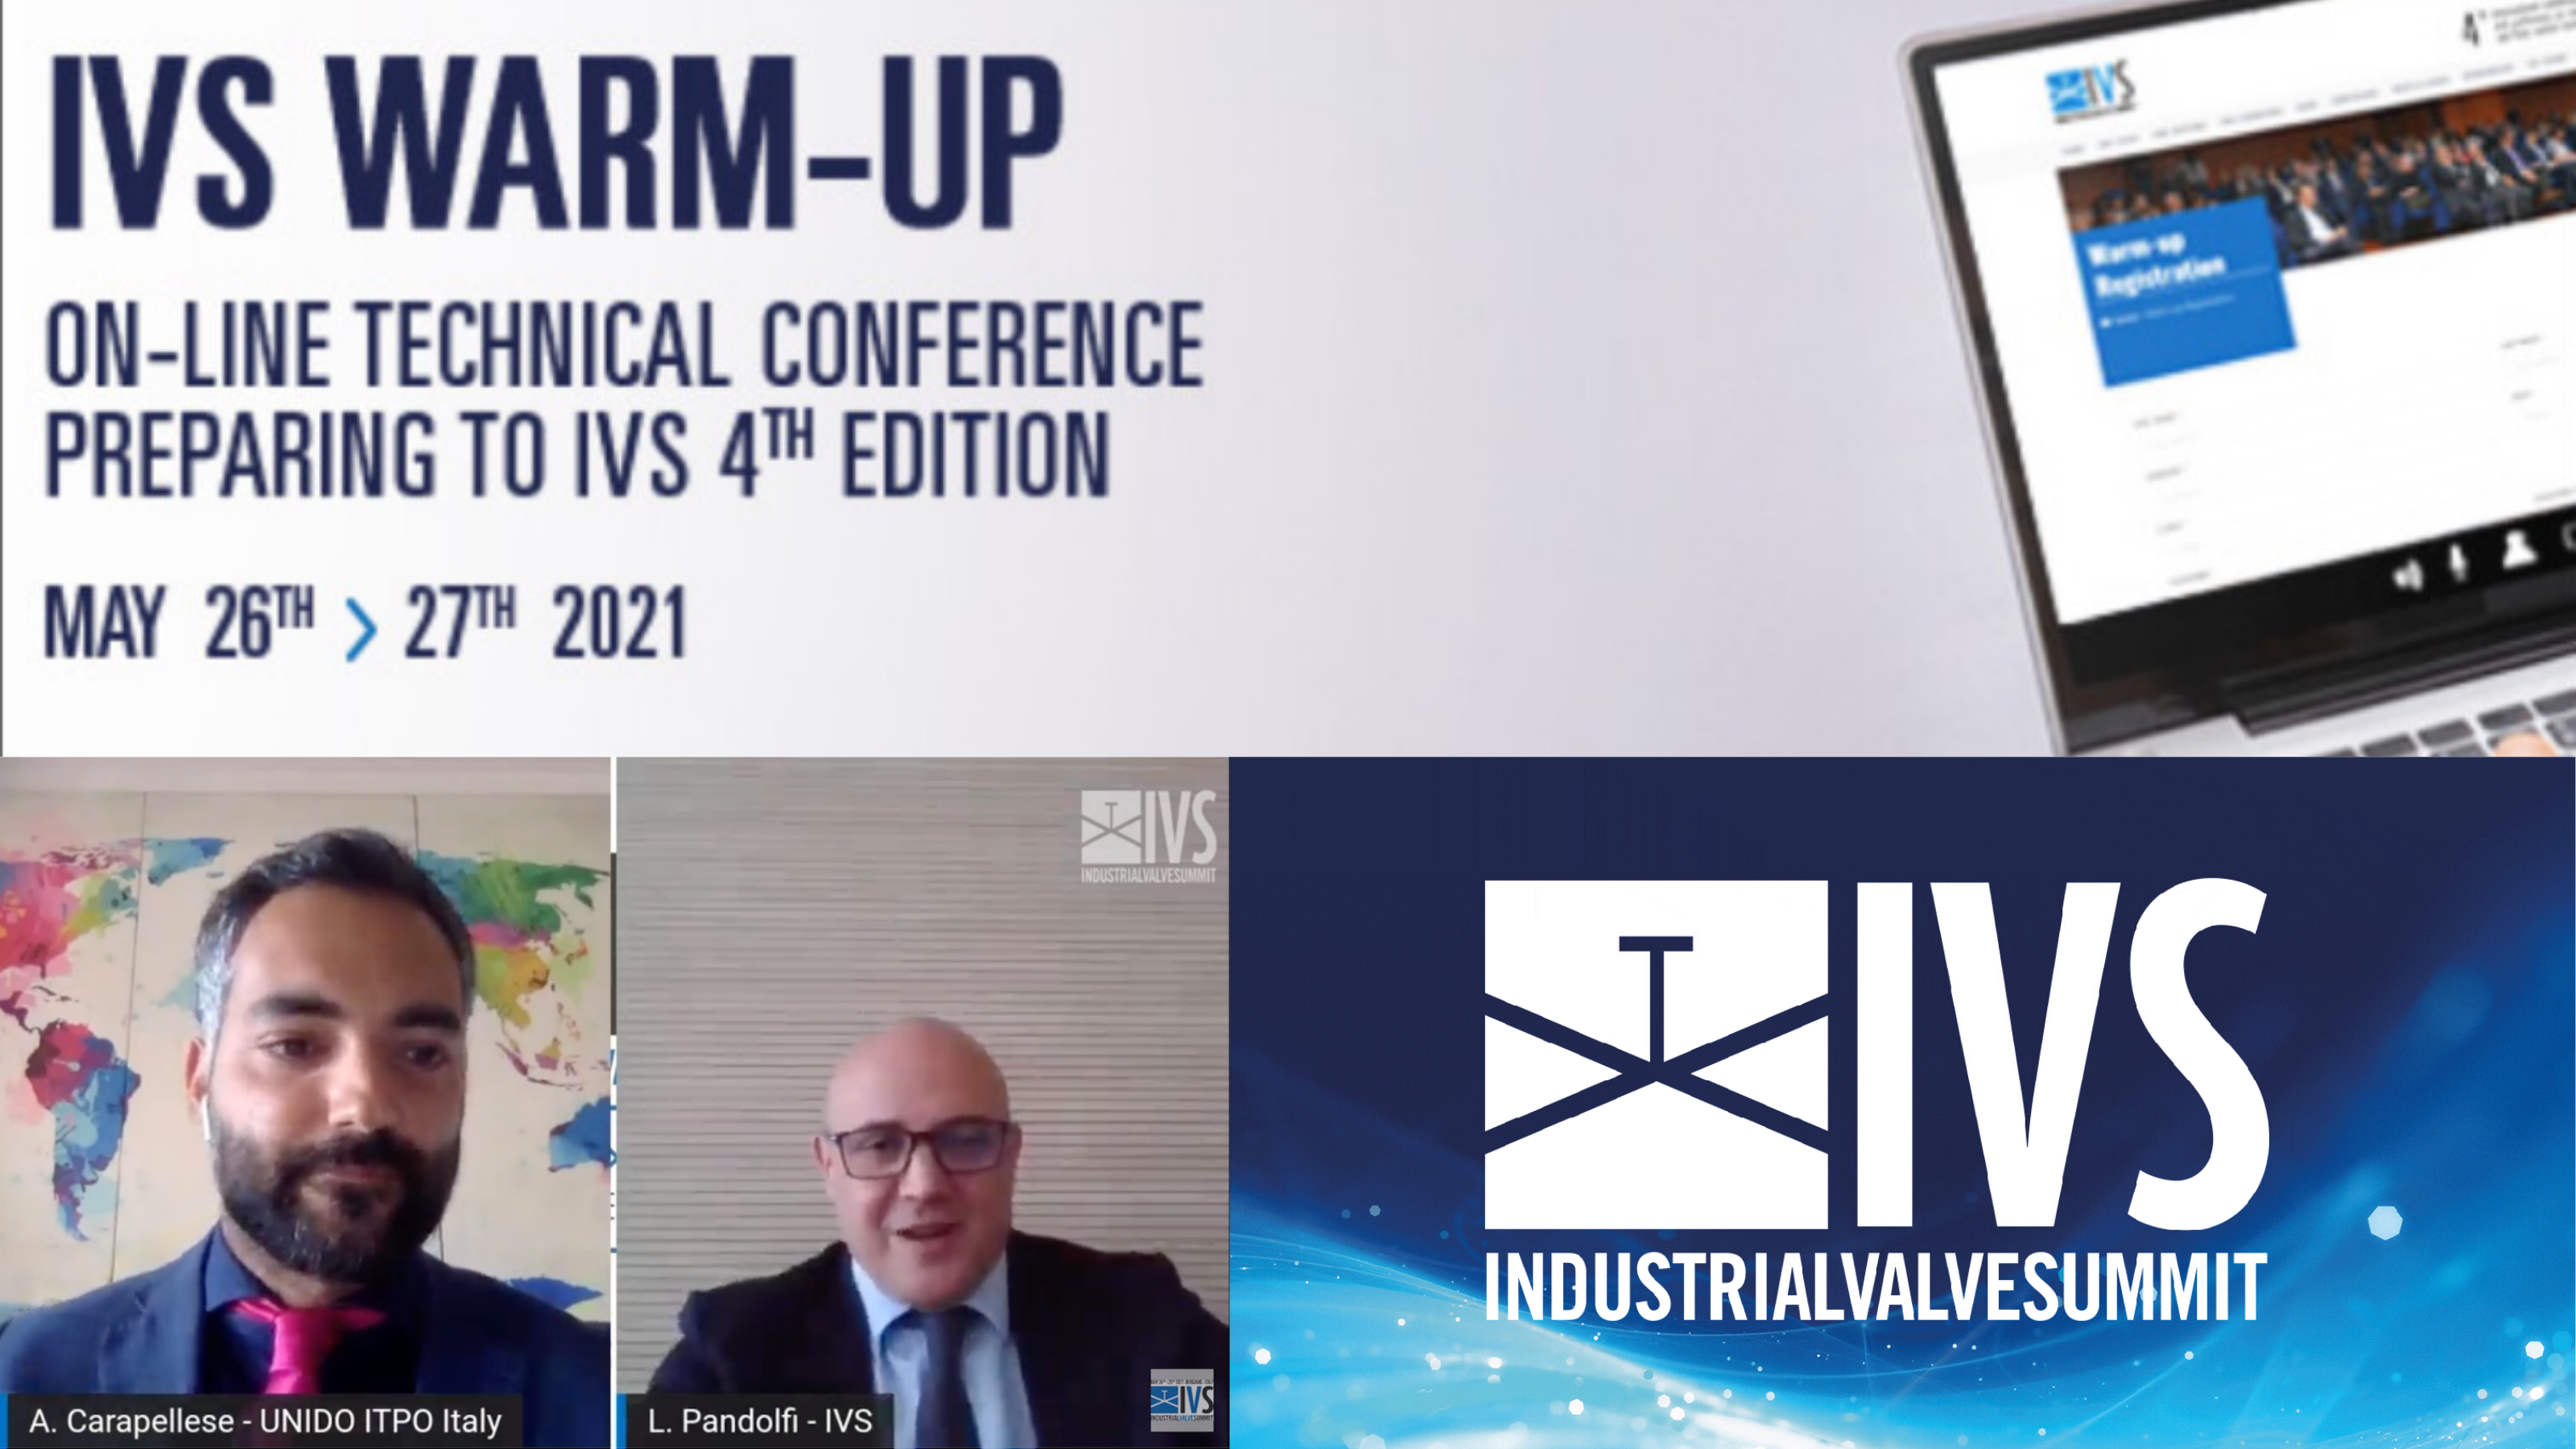 IVS Warm-Up 2021 - Industrial Valve Summit 2022